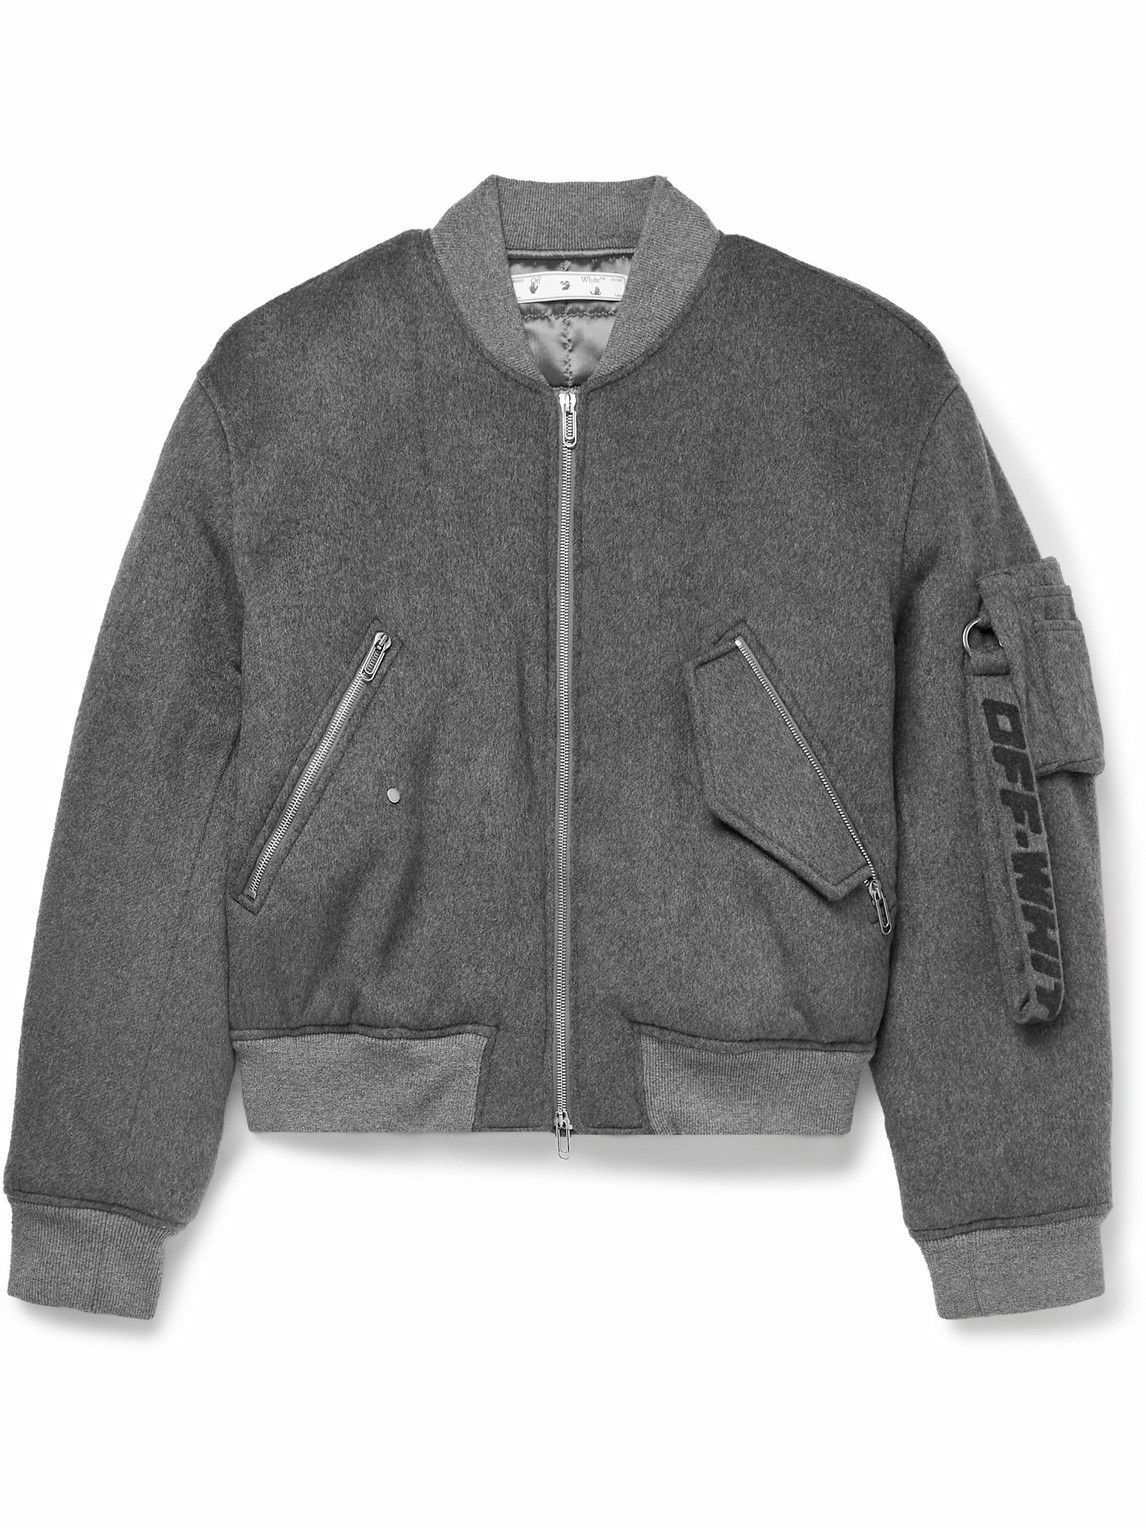 OFF-WHITE Appliquéd Wool-Blend Felt and Leather Varsity Jacket for Men